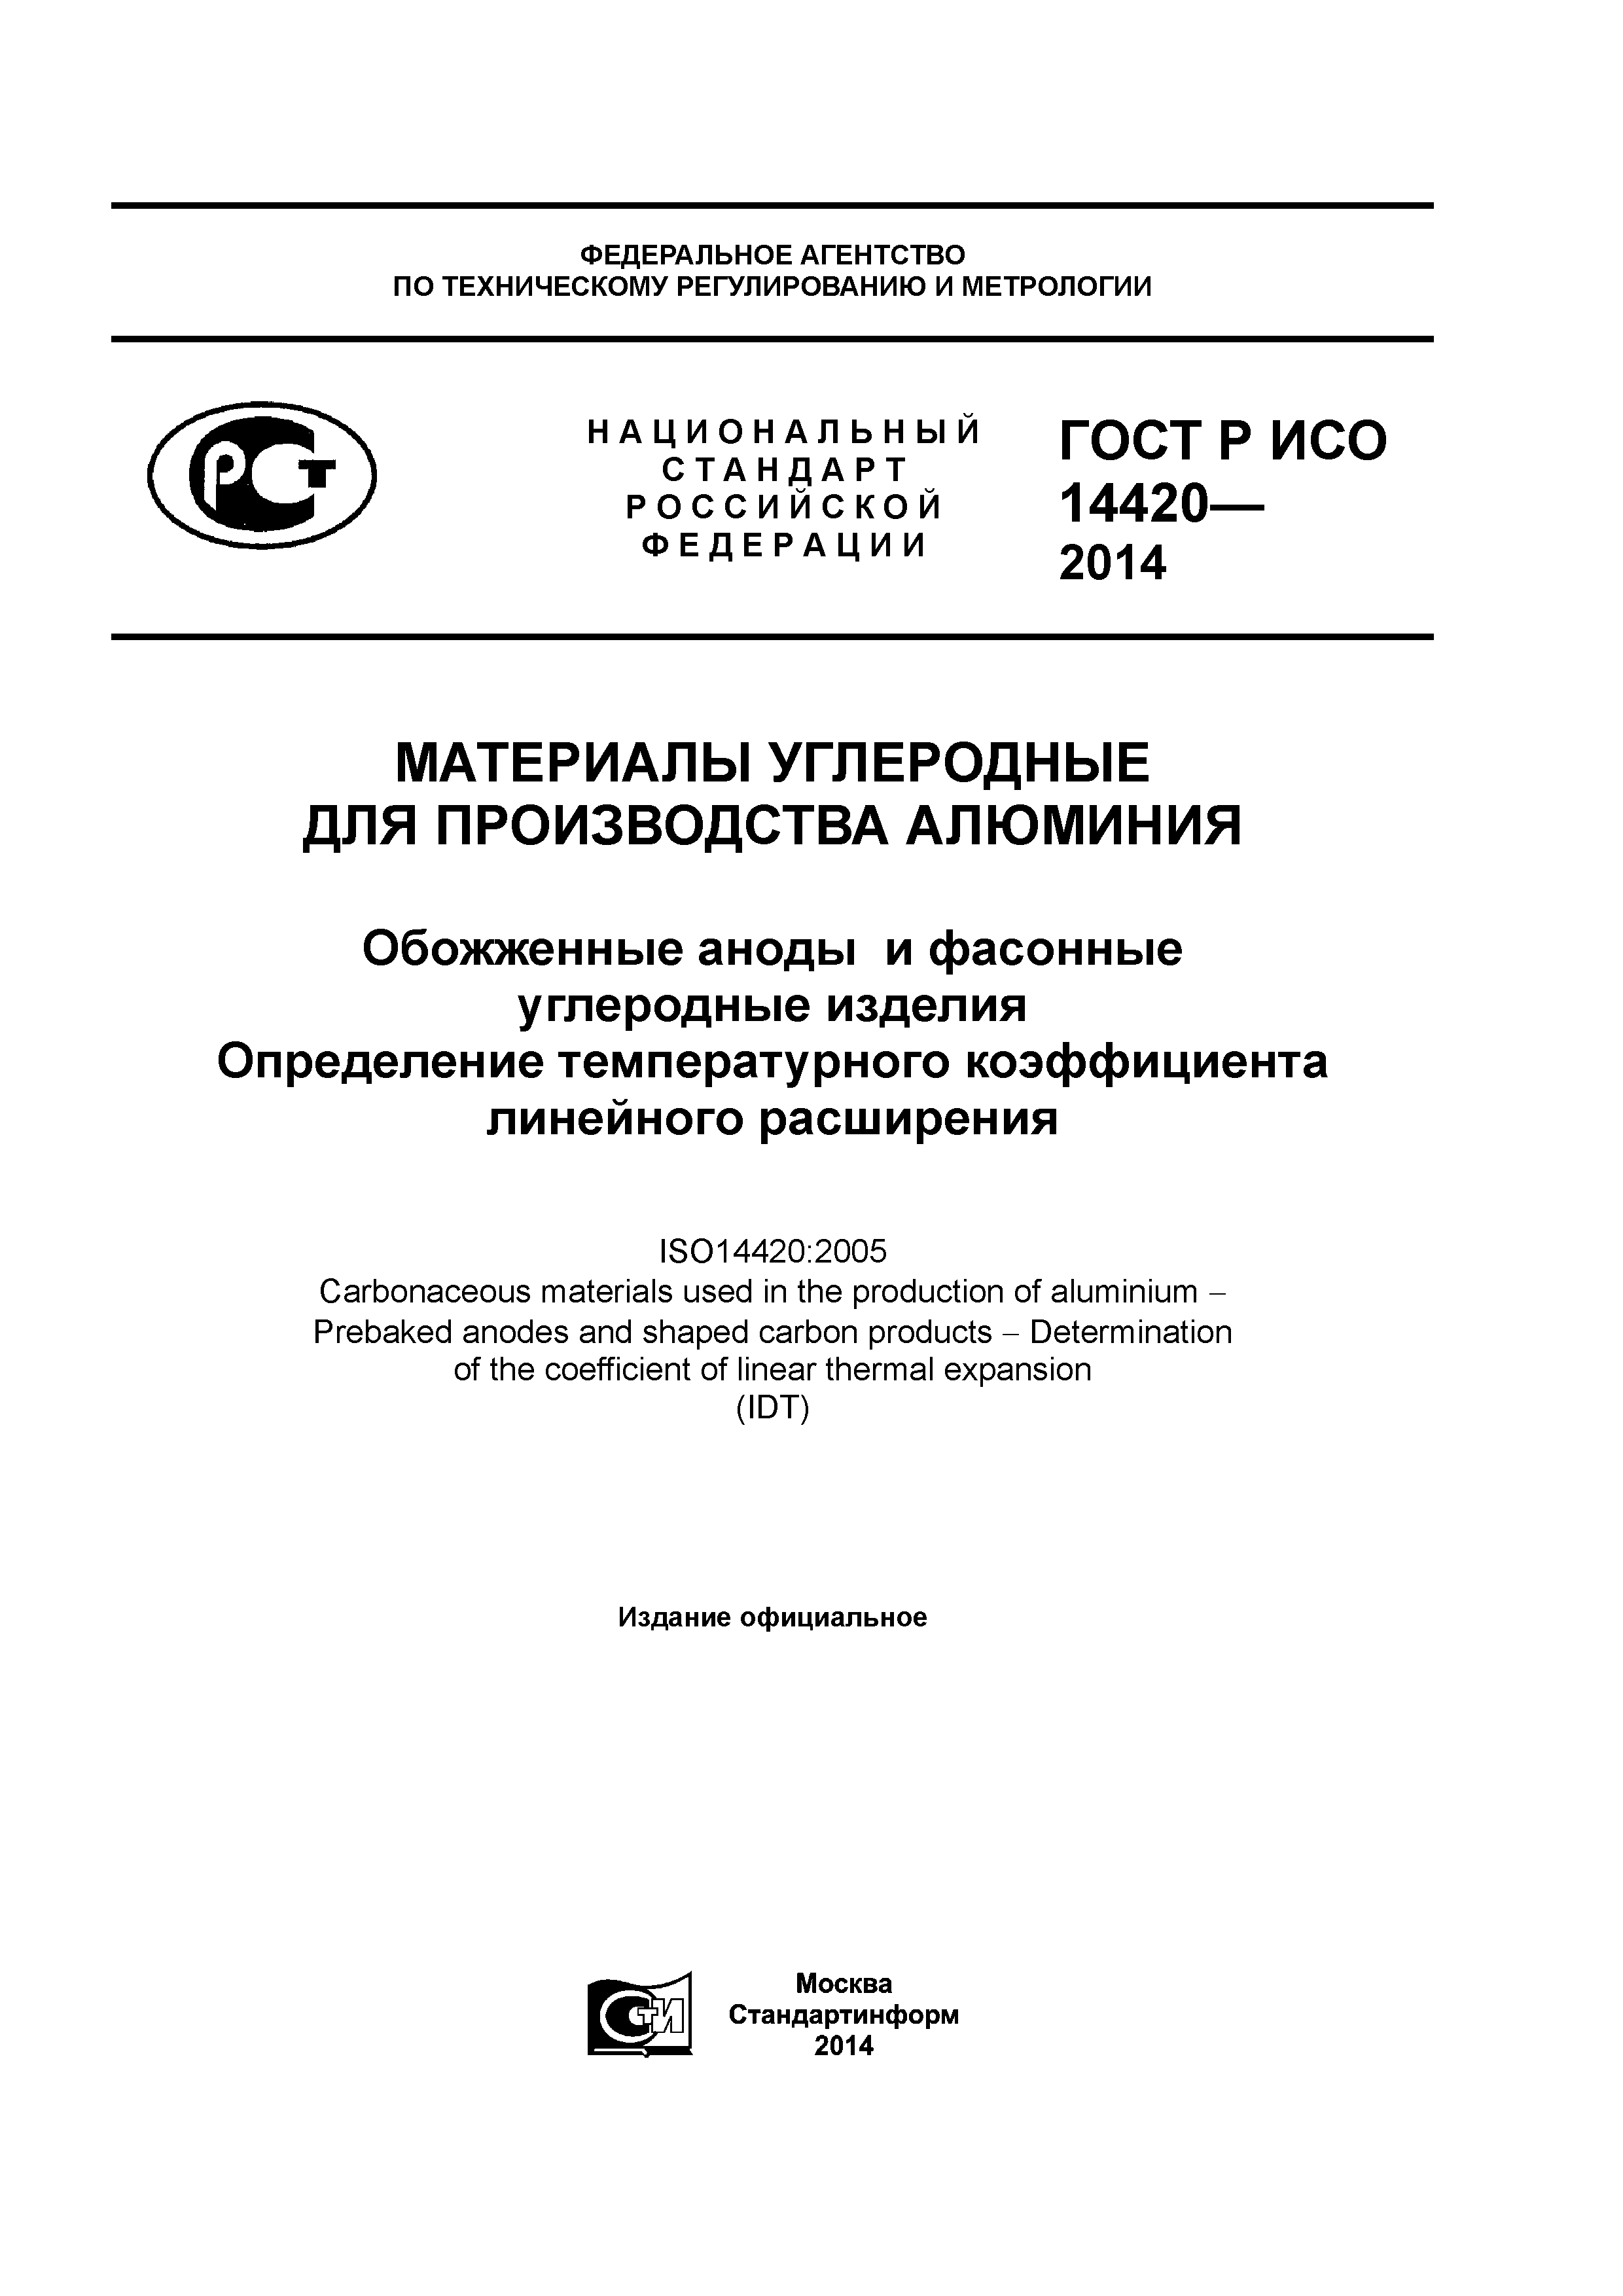 ГОСТ Р ИСО 14420-2014